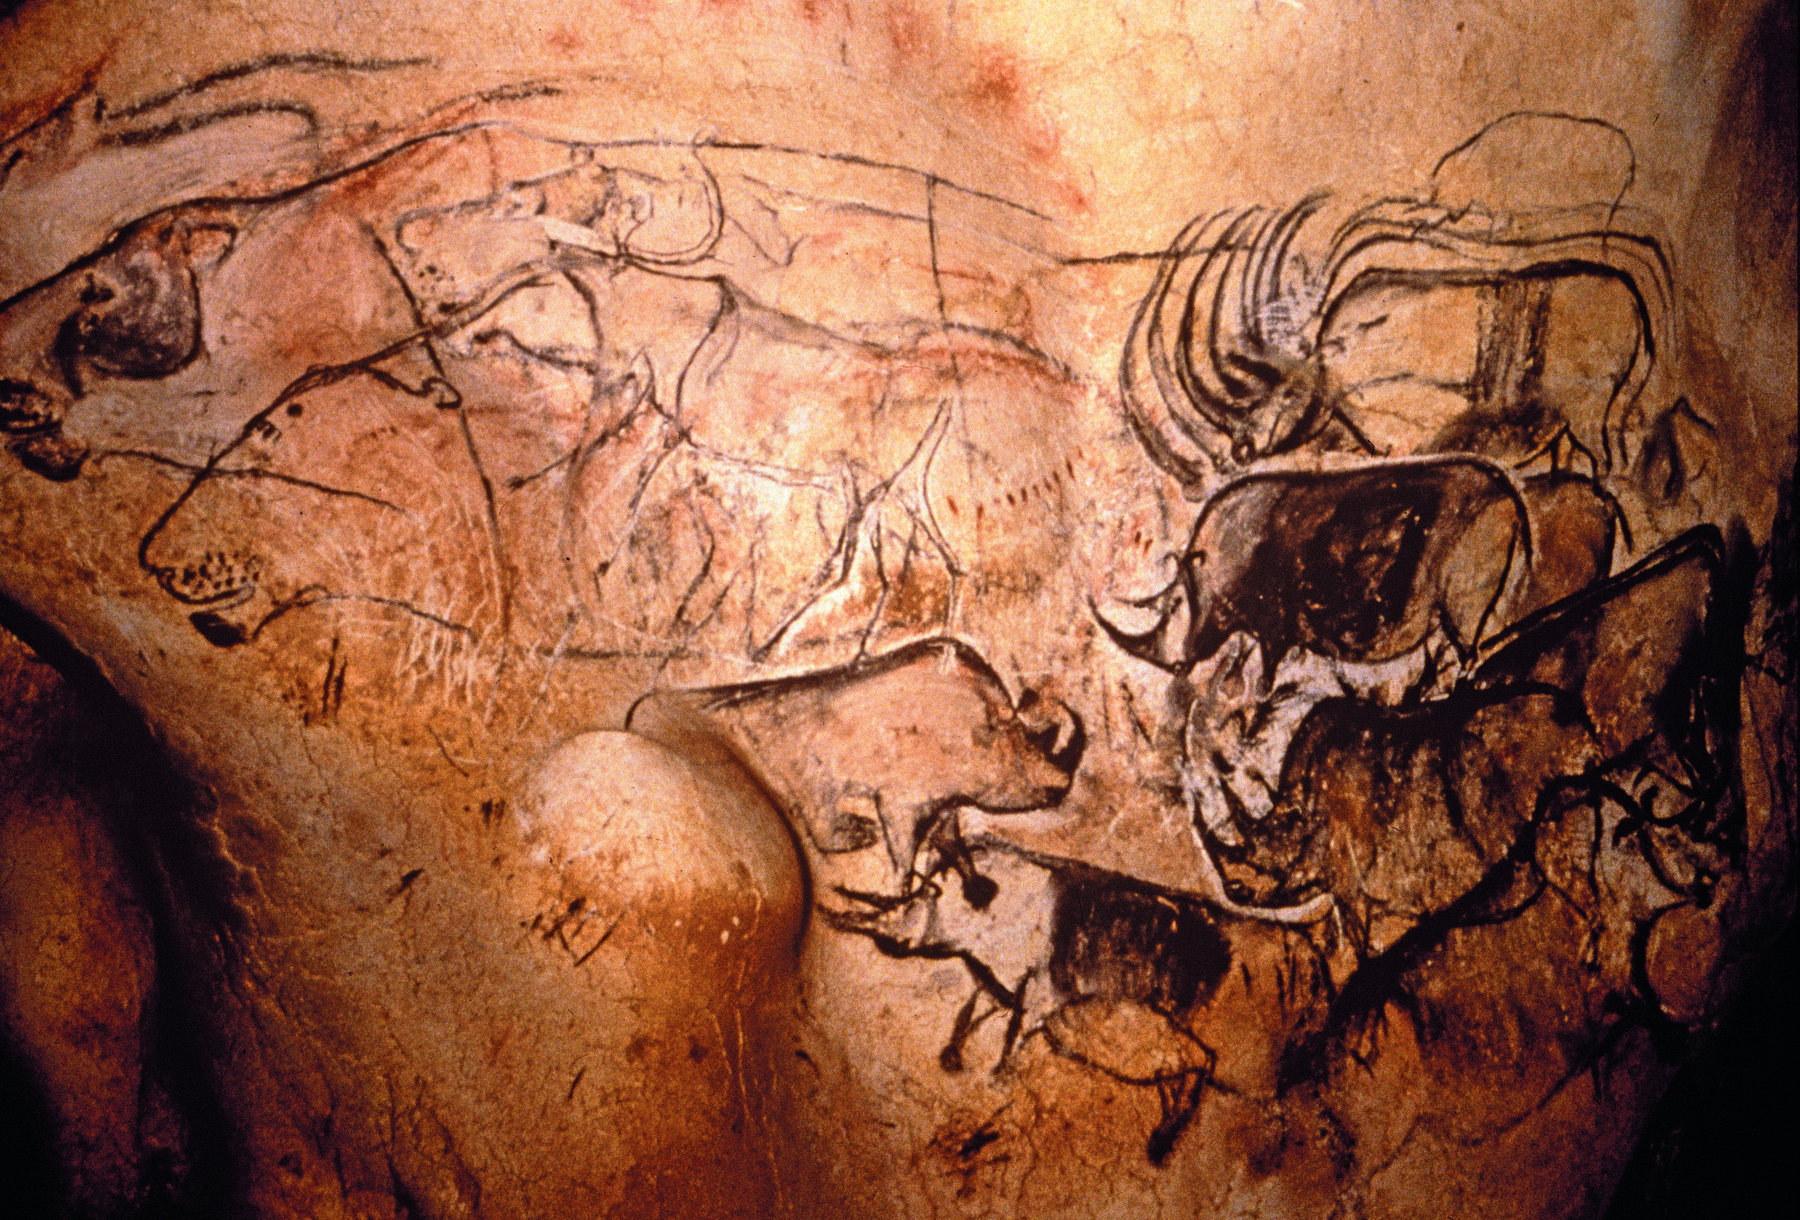 Fotografia. Pinturas rupestres na parede interna de uma caverna. À direita, animais com chifres, semelhantes a rinocerontes. Próximo a eles diversos traços.